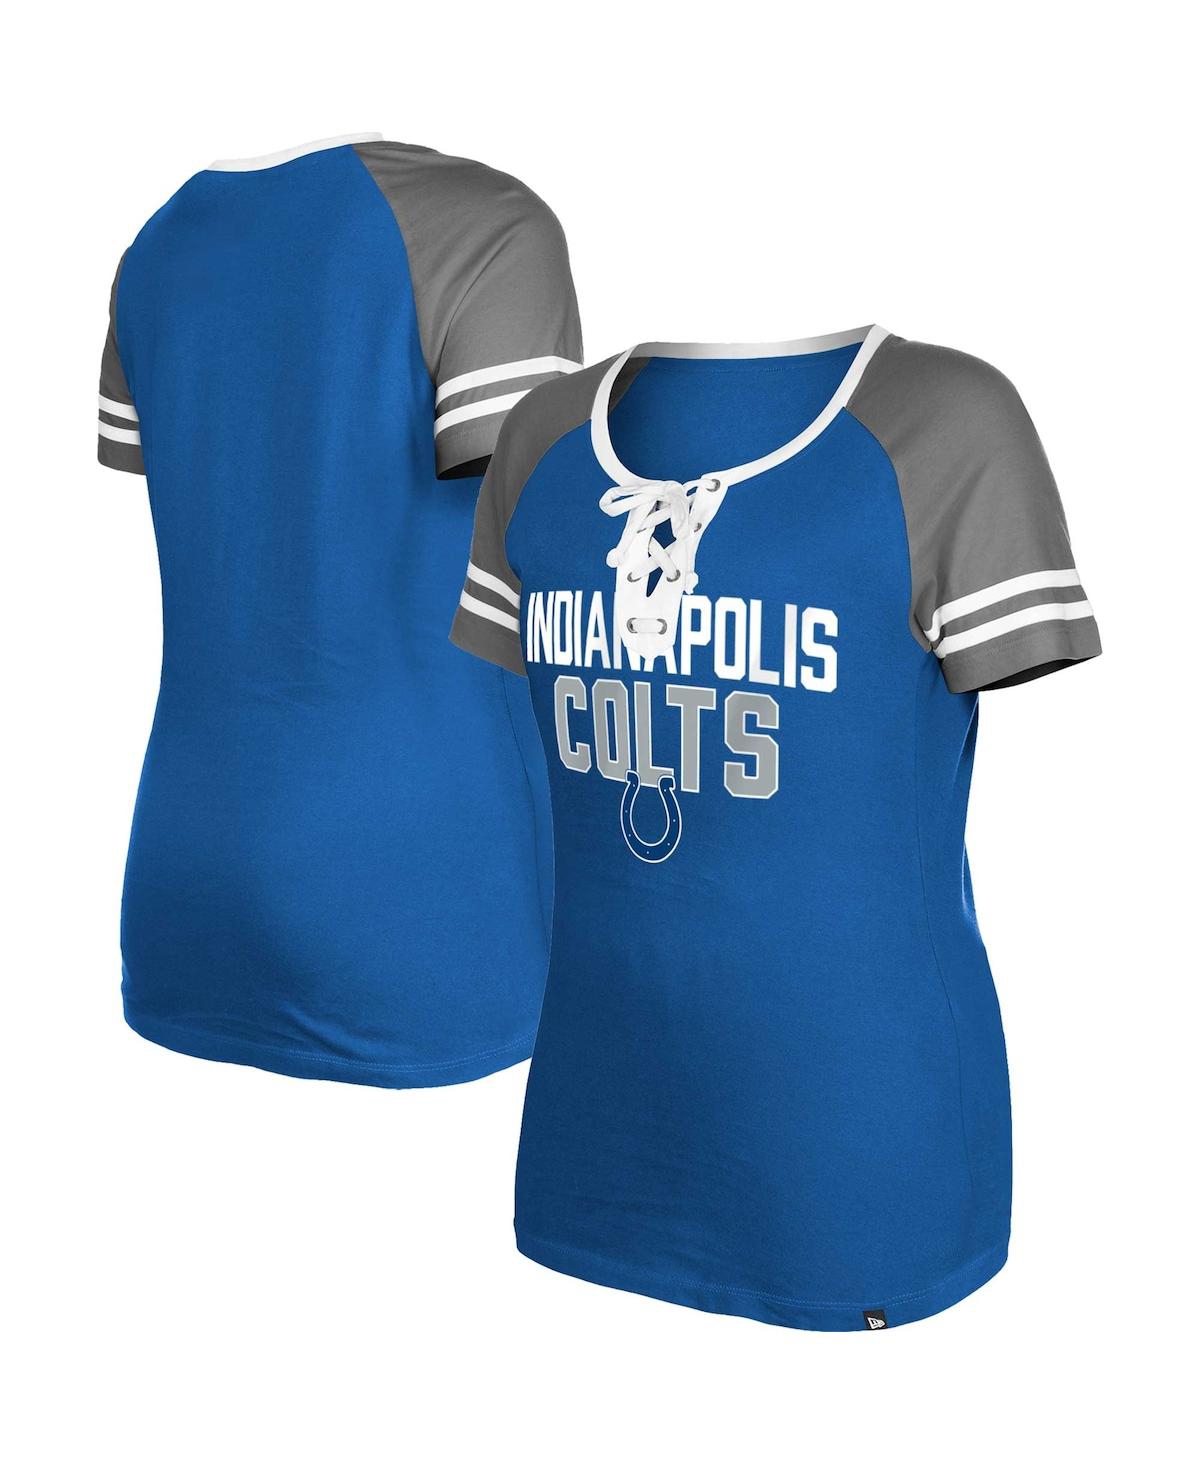 Women's New Era Royal Indianapolis Colts Raglan Lace-Up T-shirt - Royal